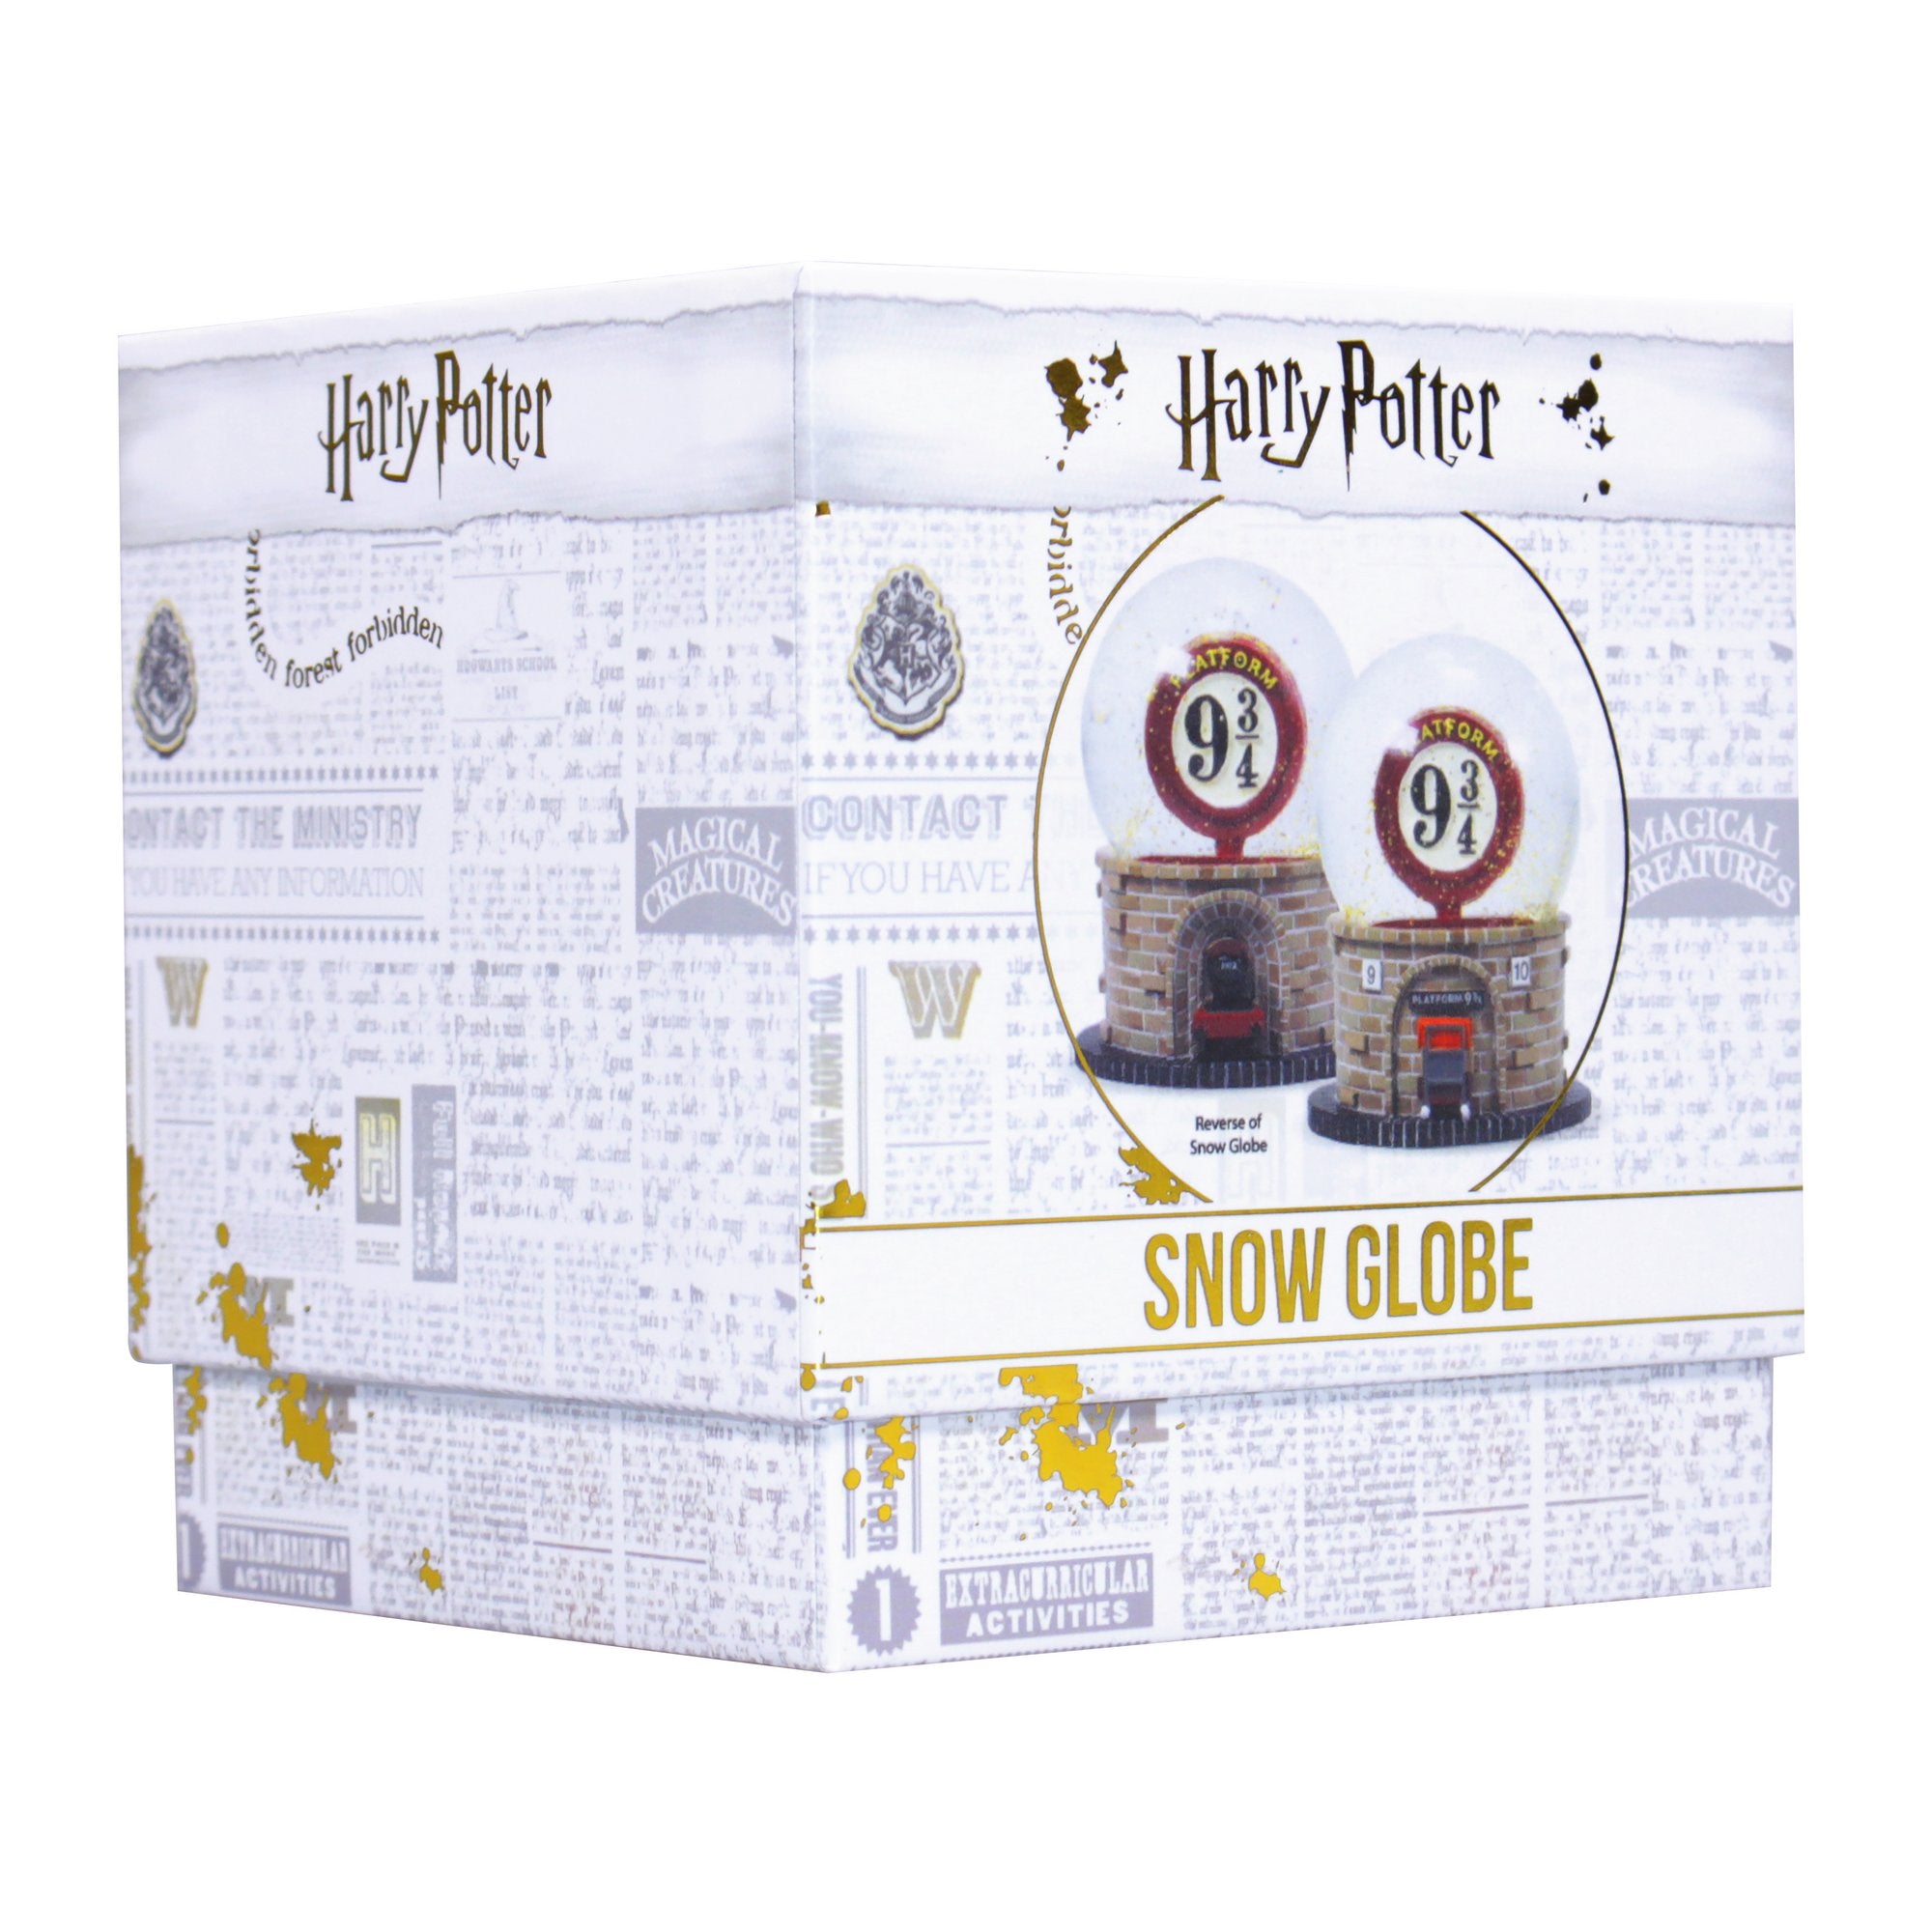 Harry Potter Snow Globe - Platform 9 3/4